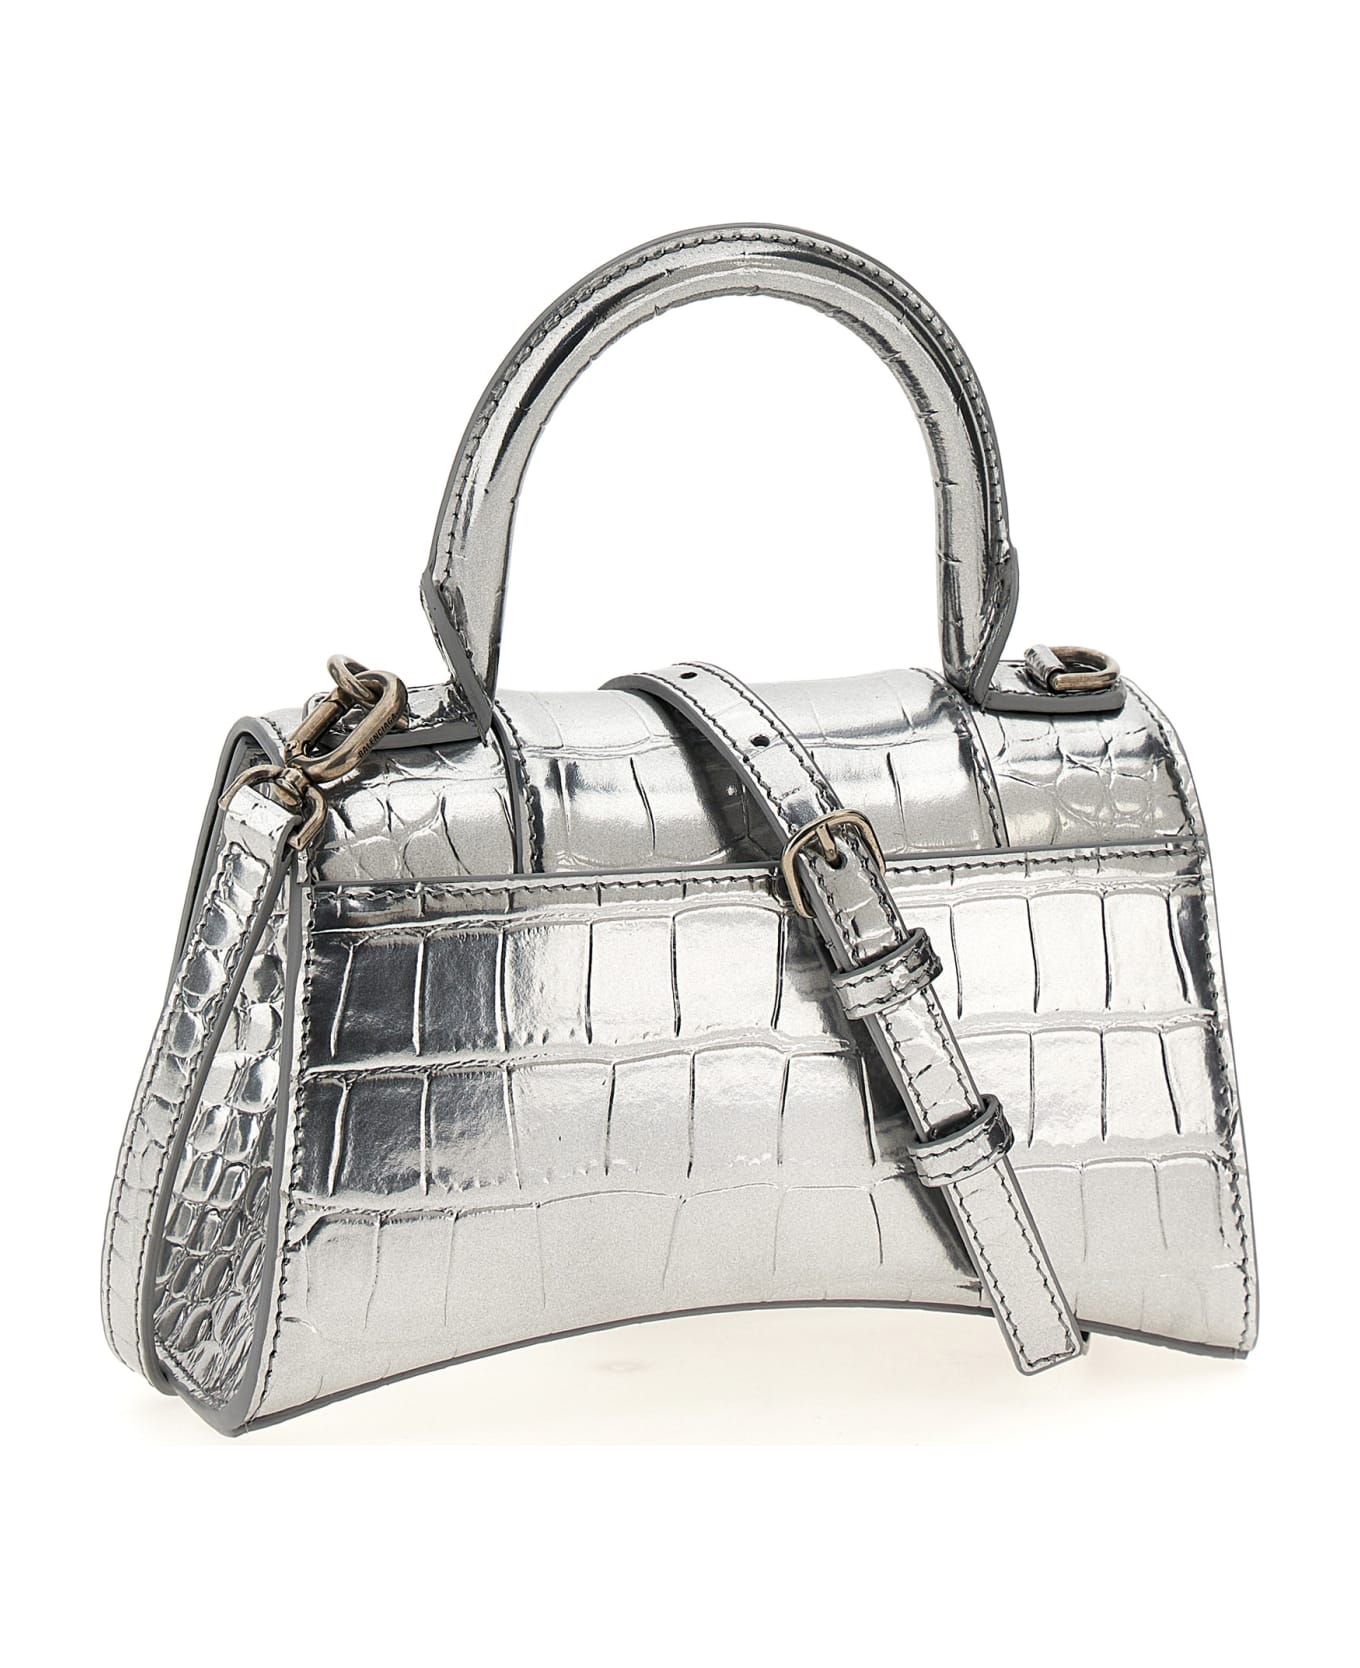 Balenciaga Hourglass Xs Handbag - Silver